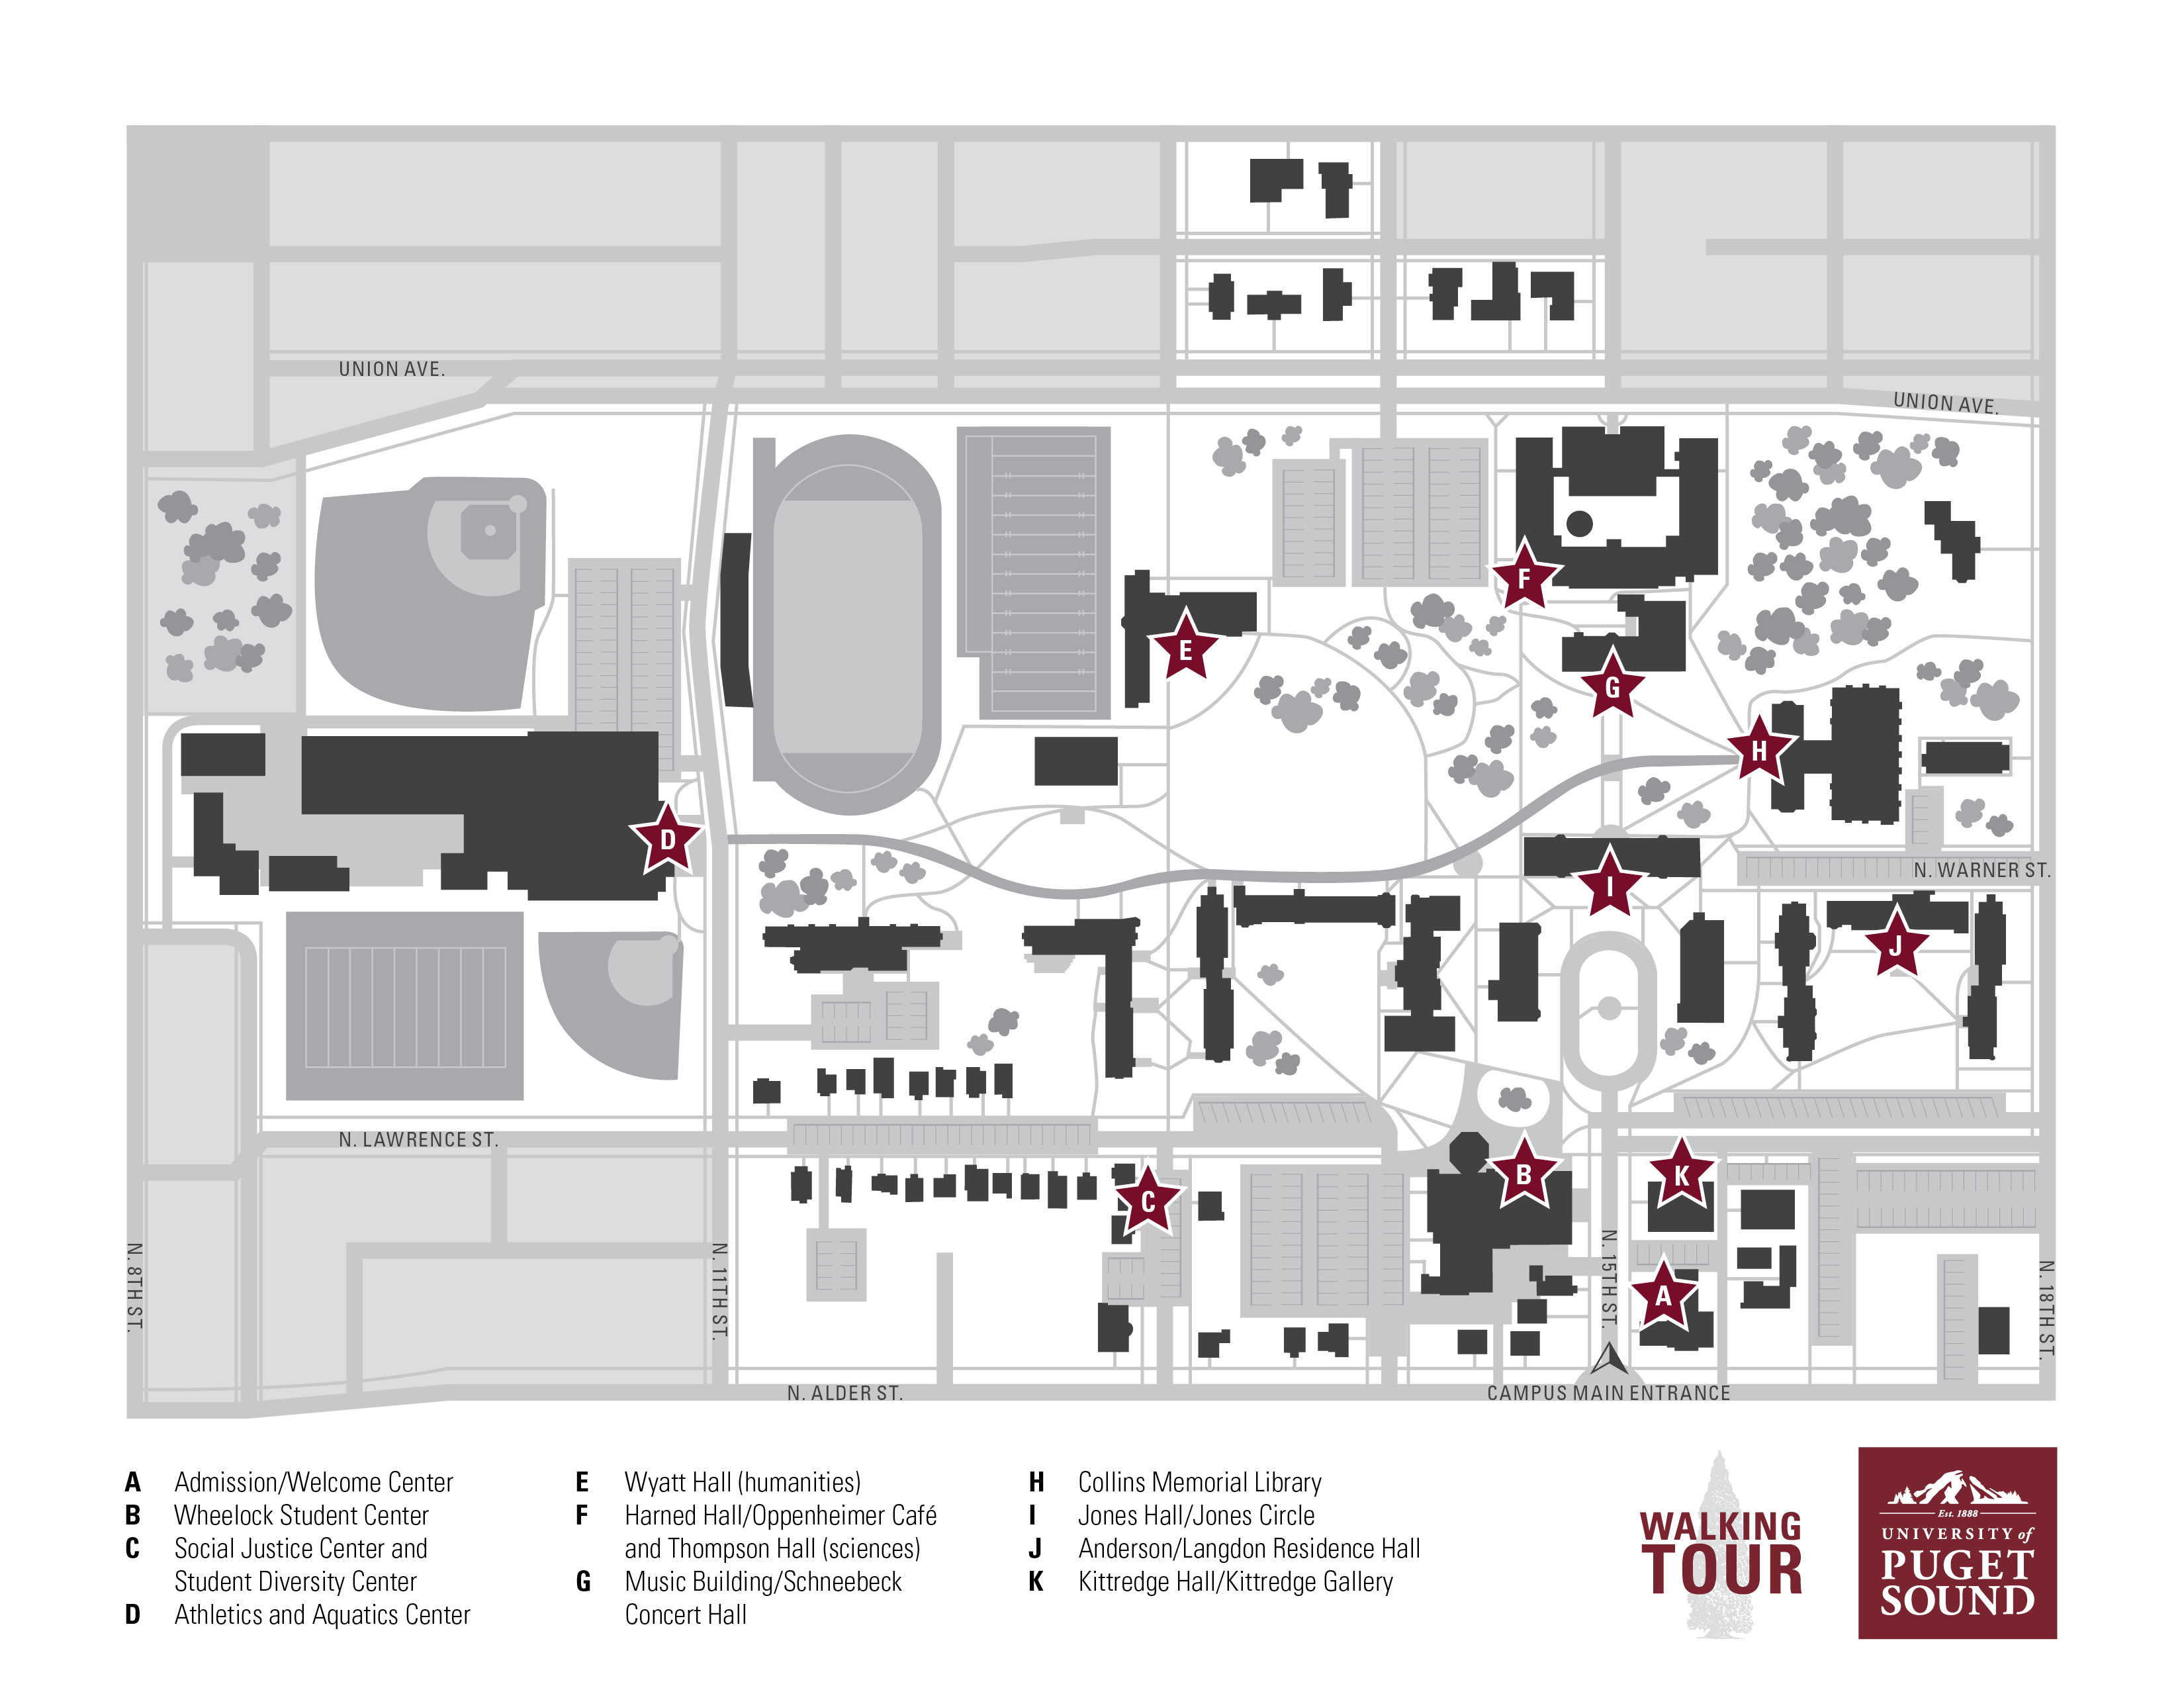 Campus Walking Map